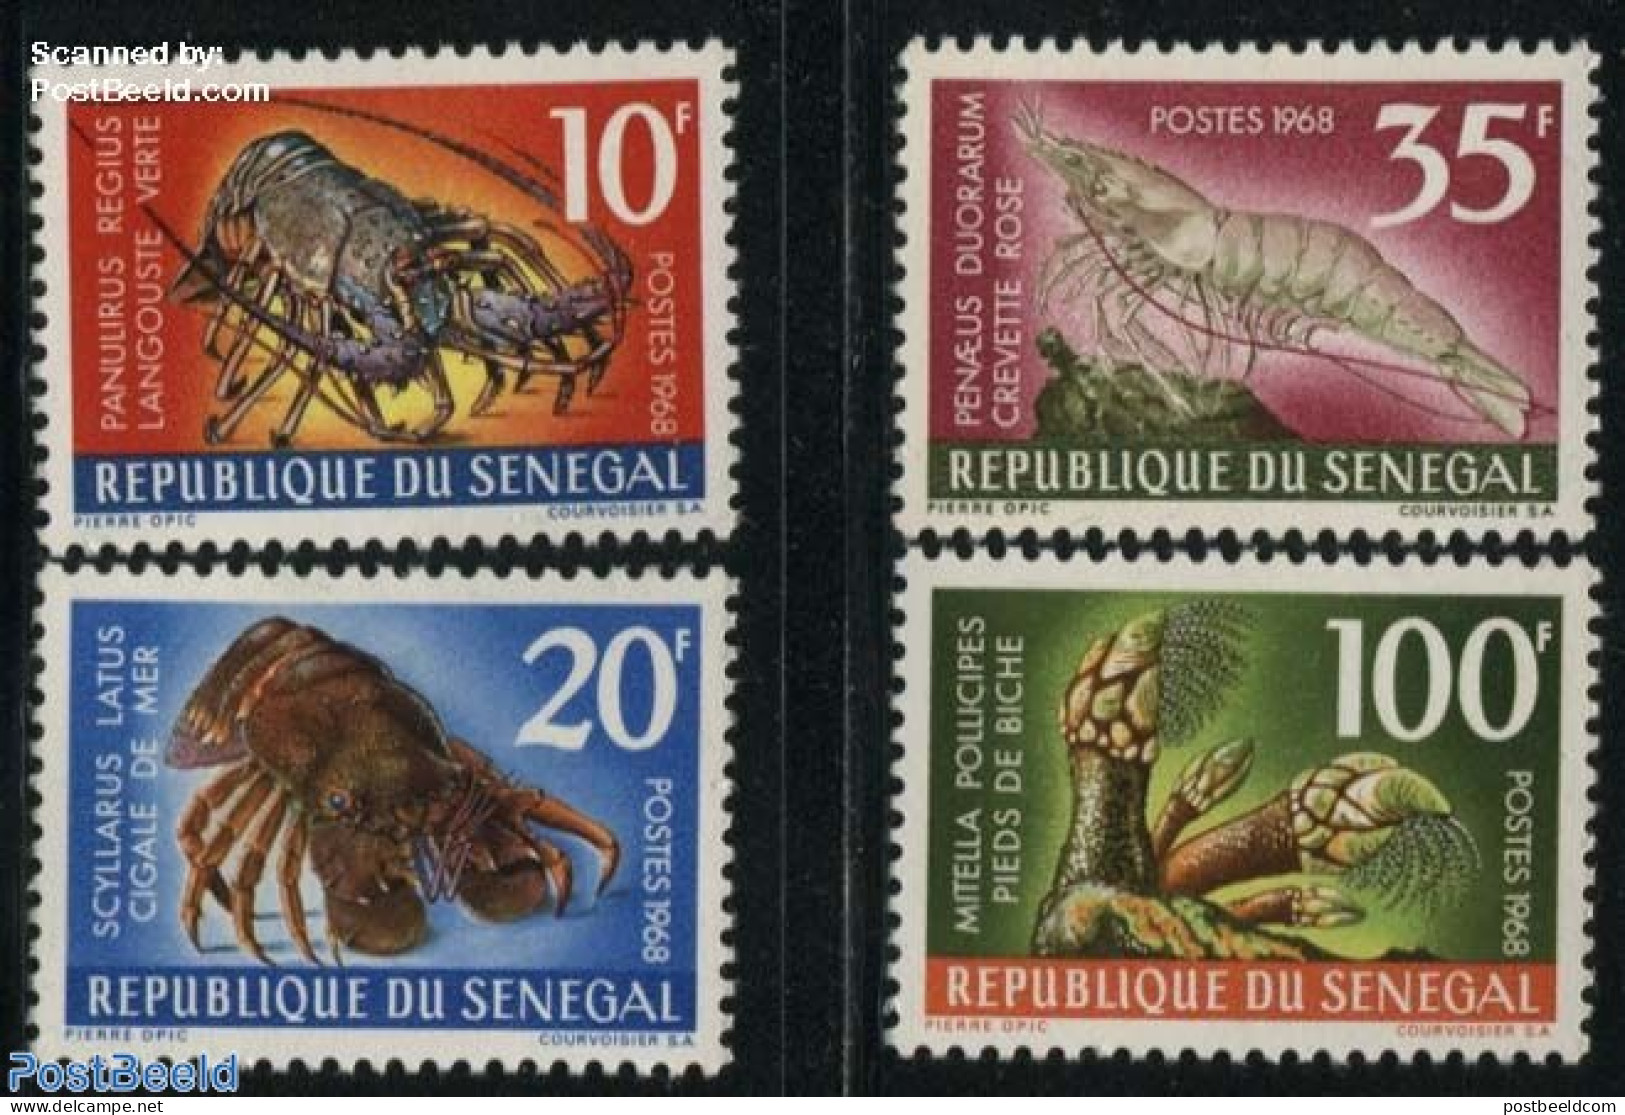 Senegal 1968 Crabs 4v, Mint NH, Nature - Crabs And Lobsters - Sénégal (1960-...)